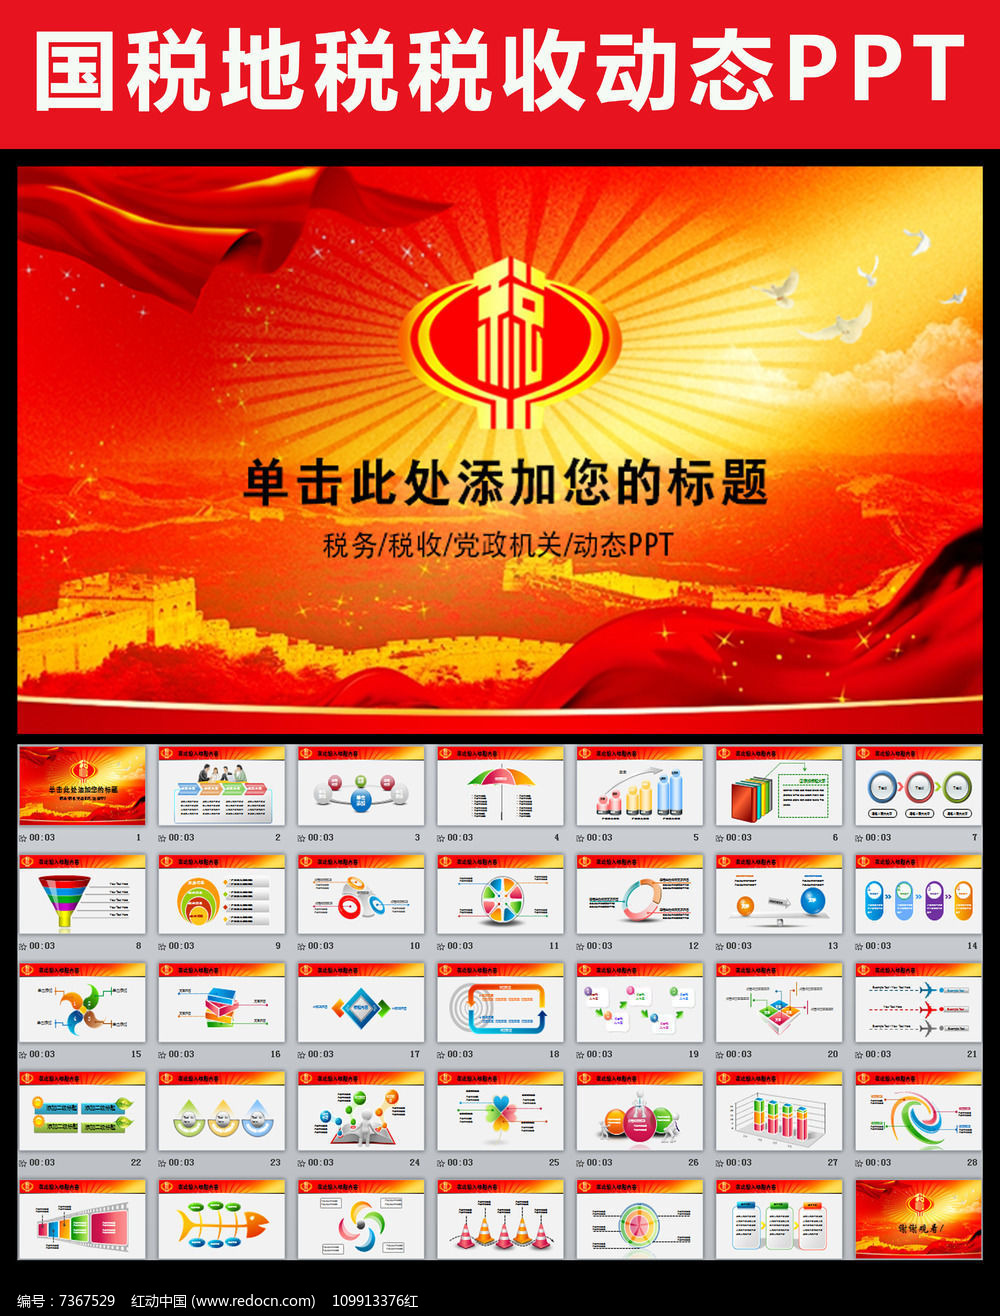 中国税务国税局工作报告总结PPT模板pptx素材